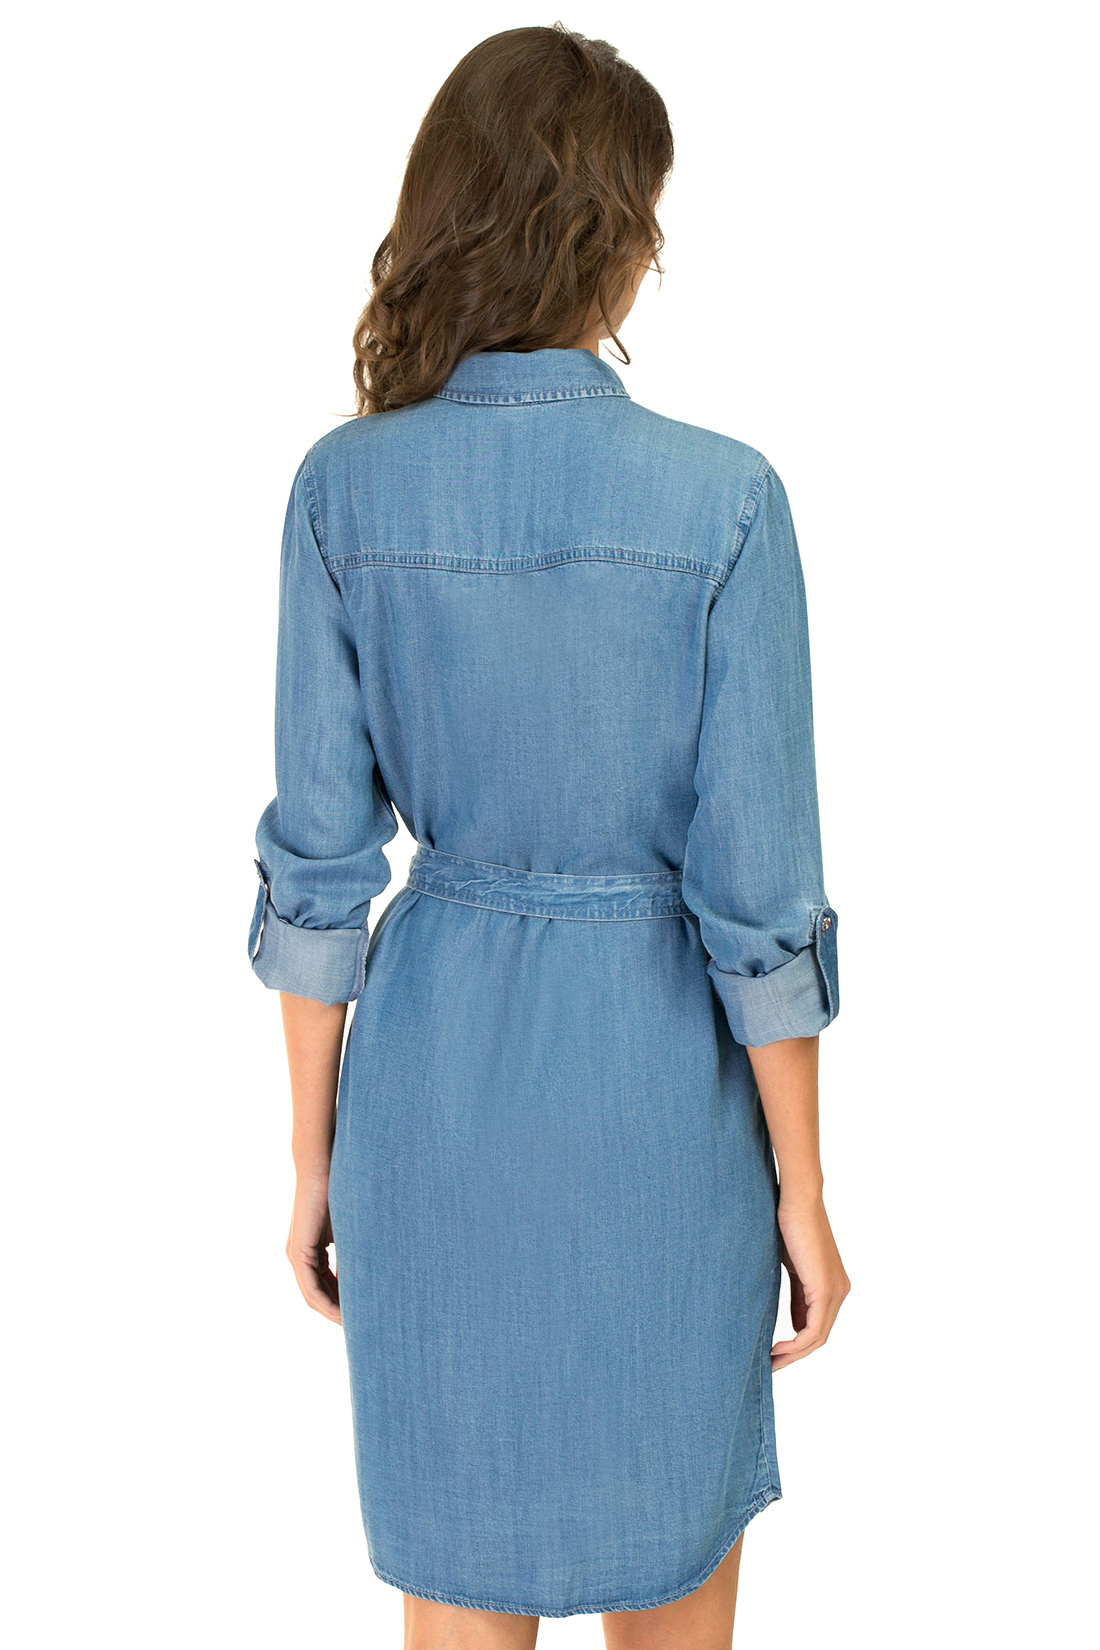 Платье-рубашка из денима (арт. baon B457088), размер L, цвет blue denim#голубой Платье-рубашка из денима (арт. baon B457088) - фото 2